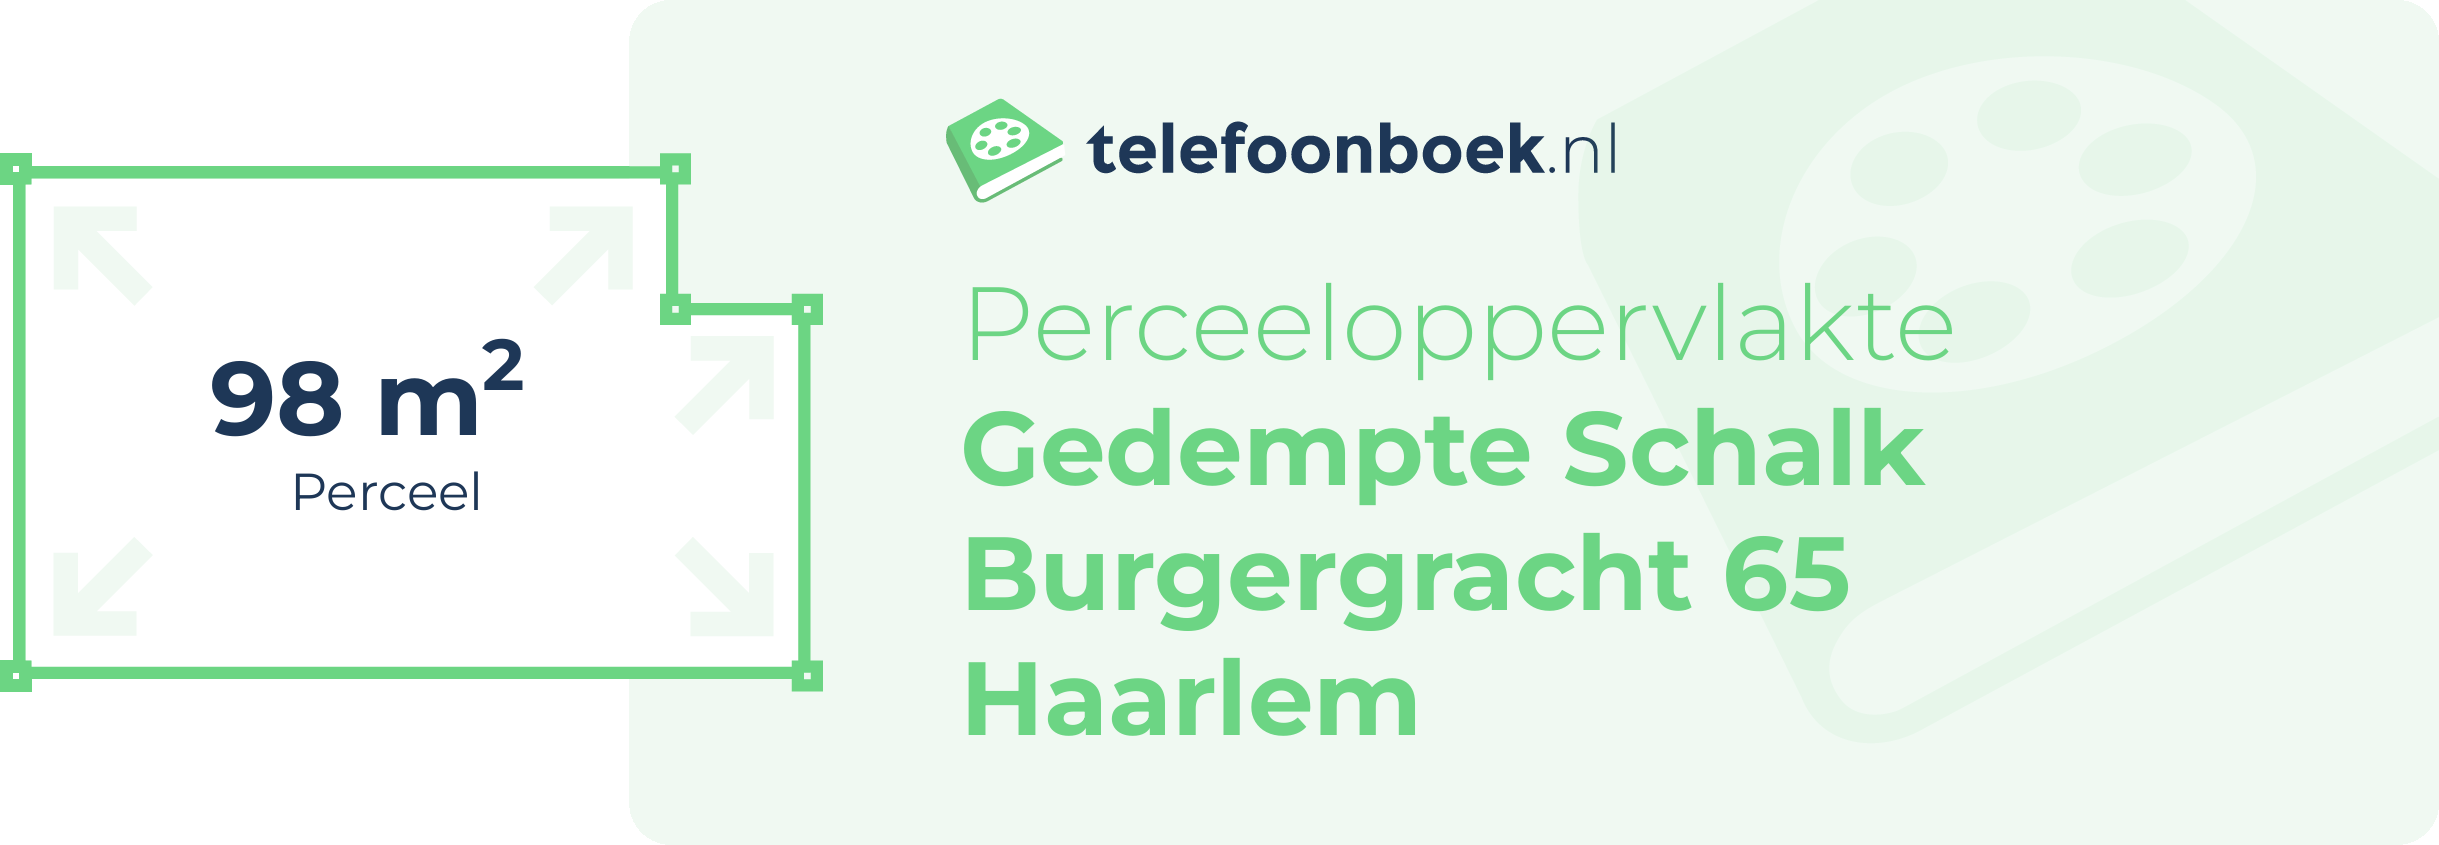 Perceeloppervlakte Gedempte Schalk Burgergracht 65 Haarlem